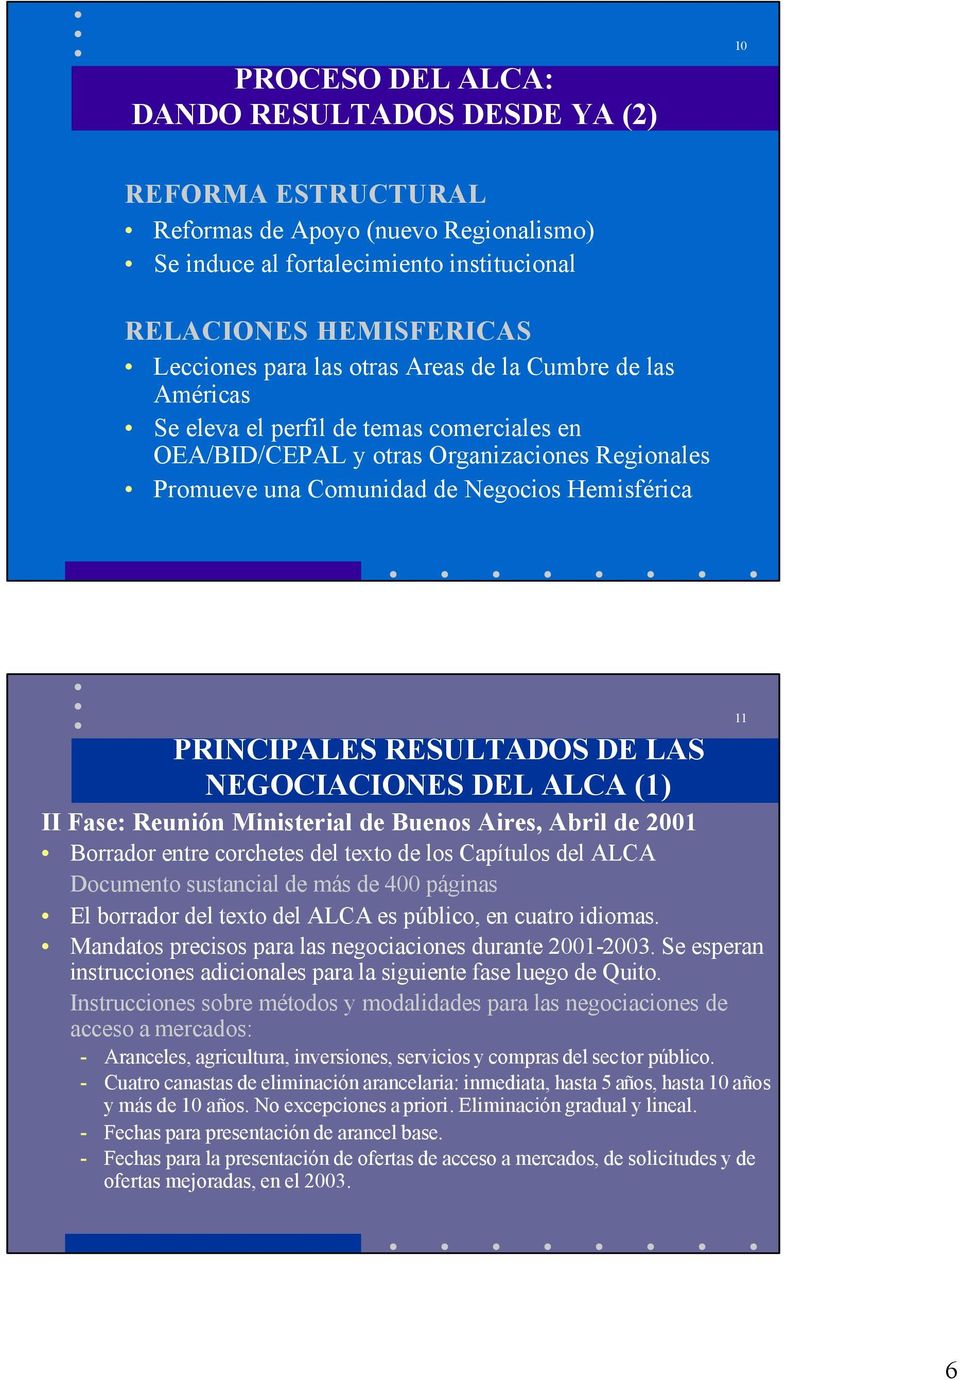 RESULTADOS DE LAS NEGOCIACIONES DEL ALCA (1) II Fase: Reunión Ministerial de Buenos Aires, Abril de 2001 Borrador entre corchetes del texto de los Capítulos del ALCA Documento sustancial de más de